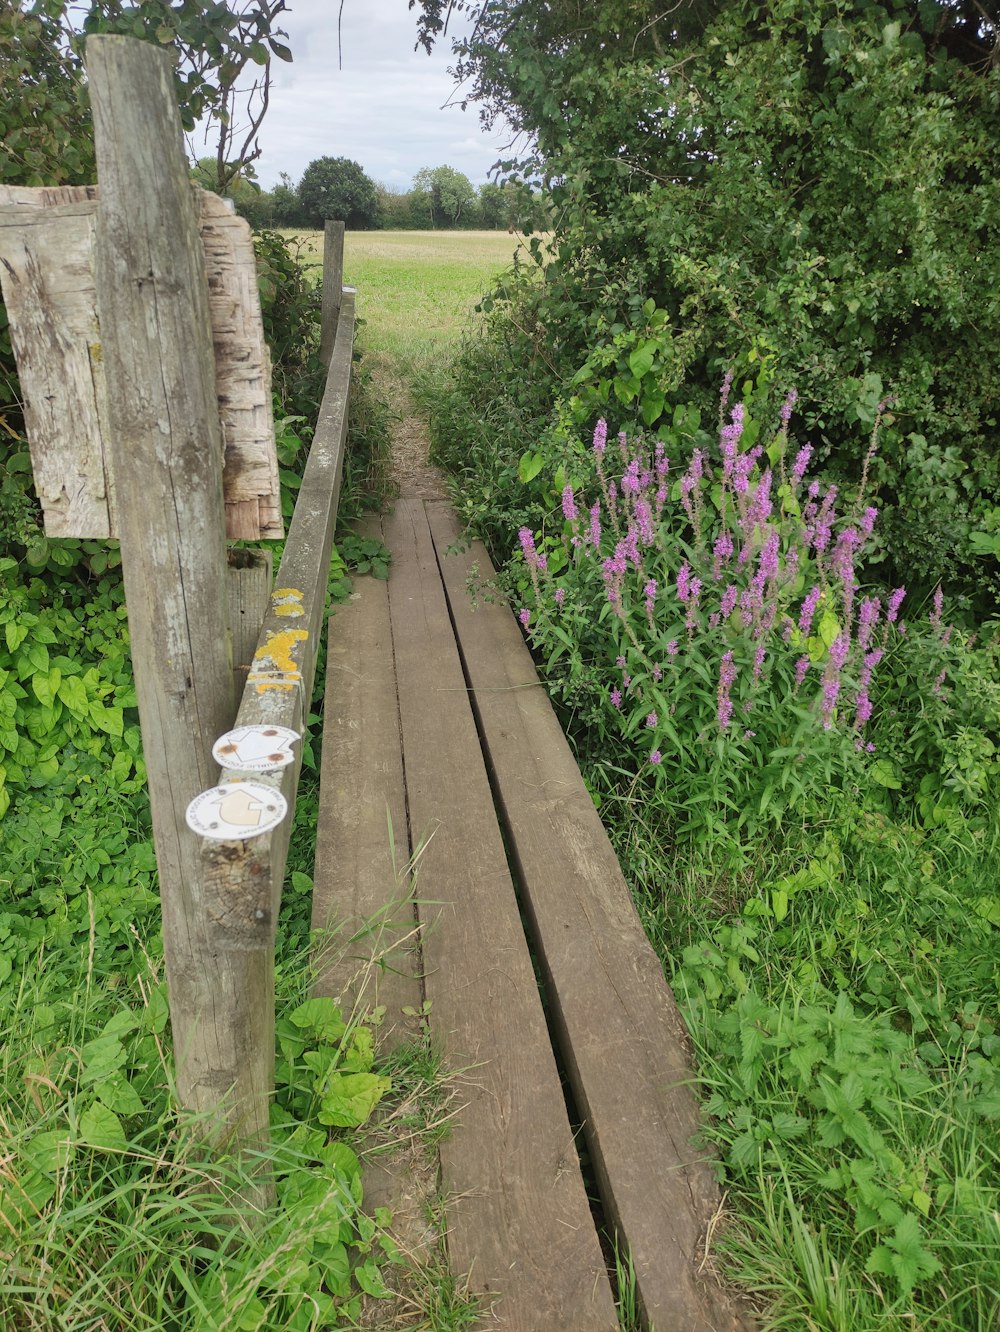 a wooden path through a lush green field